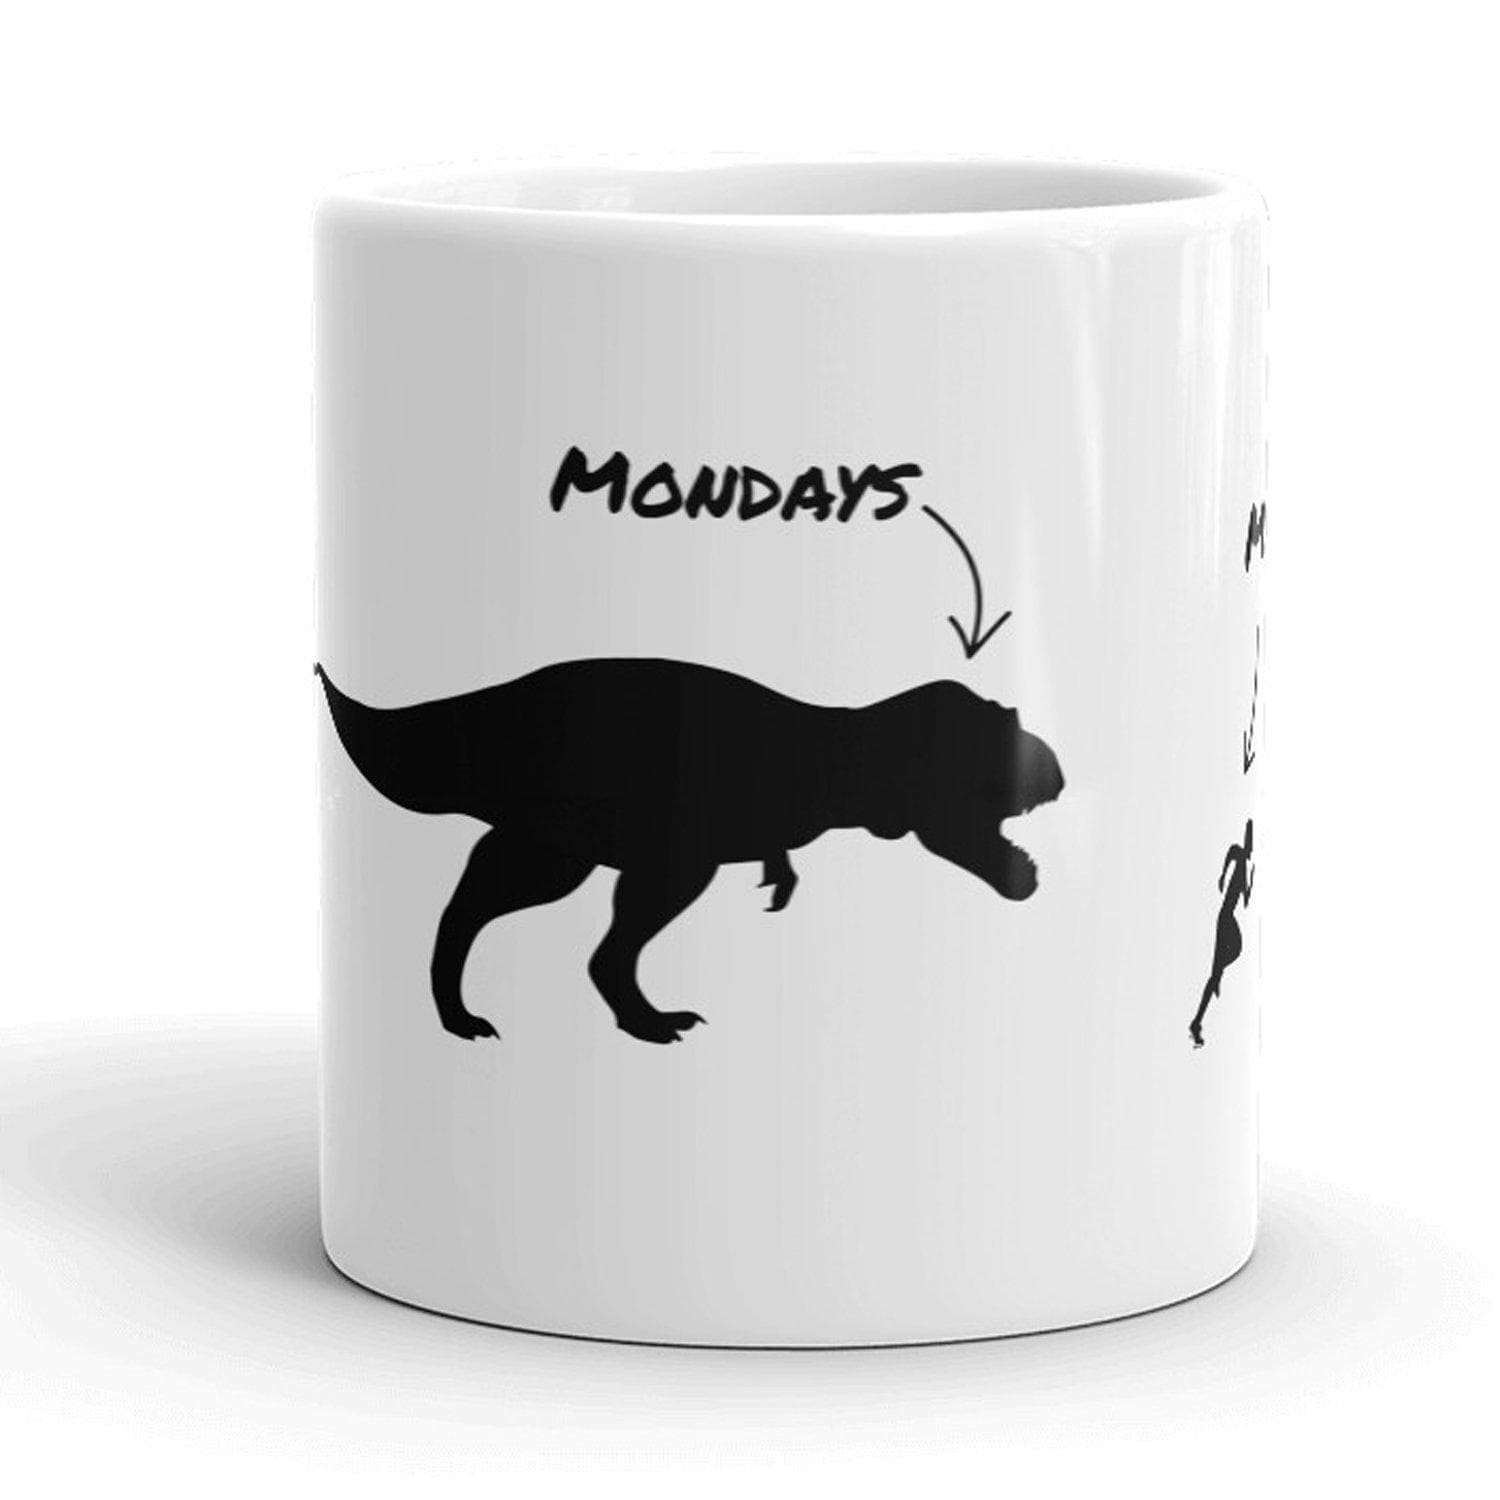 Mondays And Me Mug - Crazy Dog T-Shirts